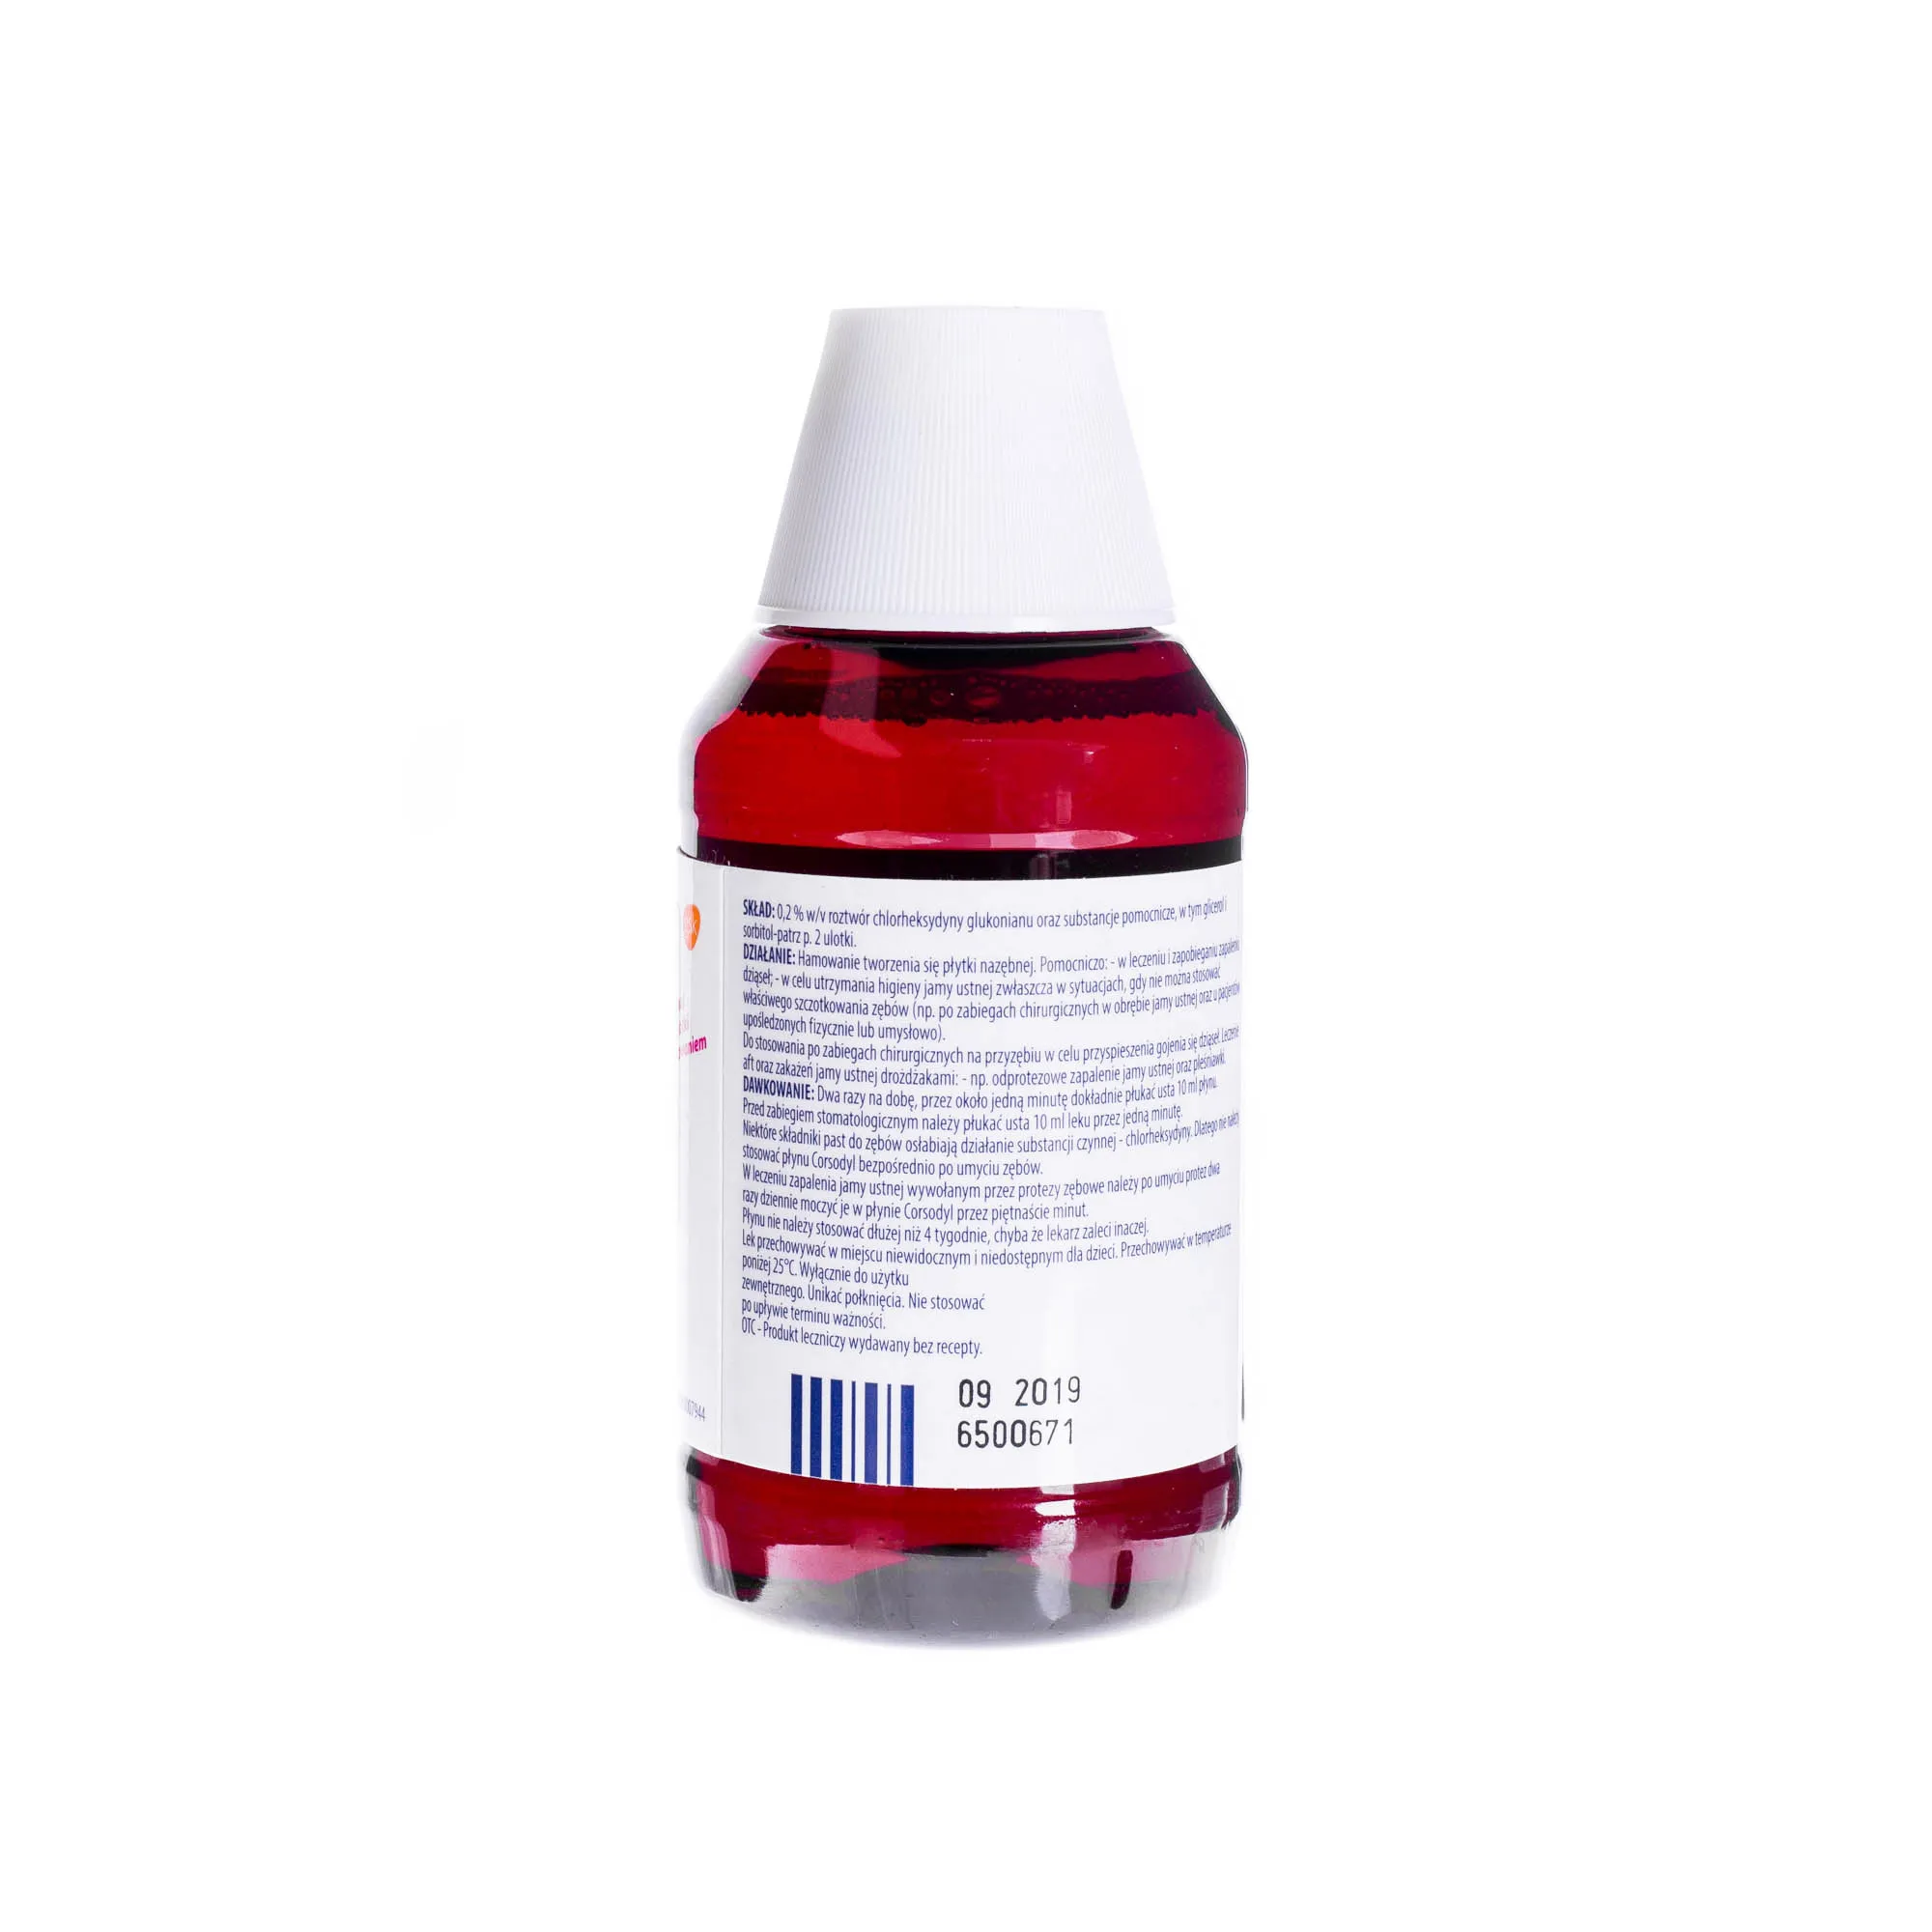 Corsodyl - syrop przeciwbakteryjny o smaku miętowym, 300 ml 